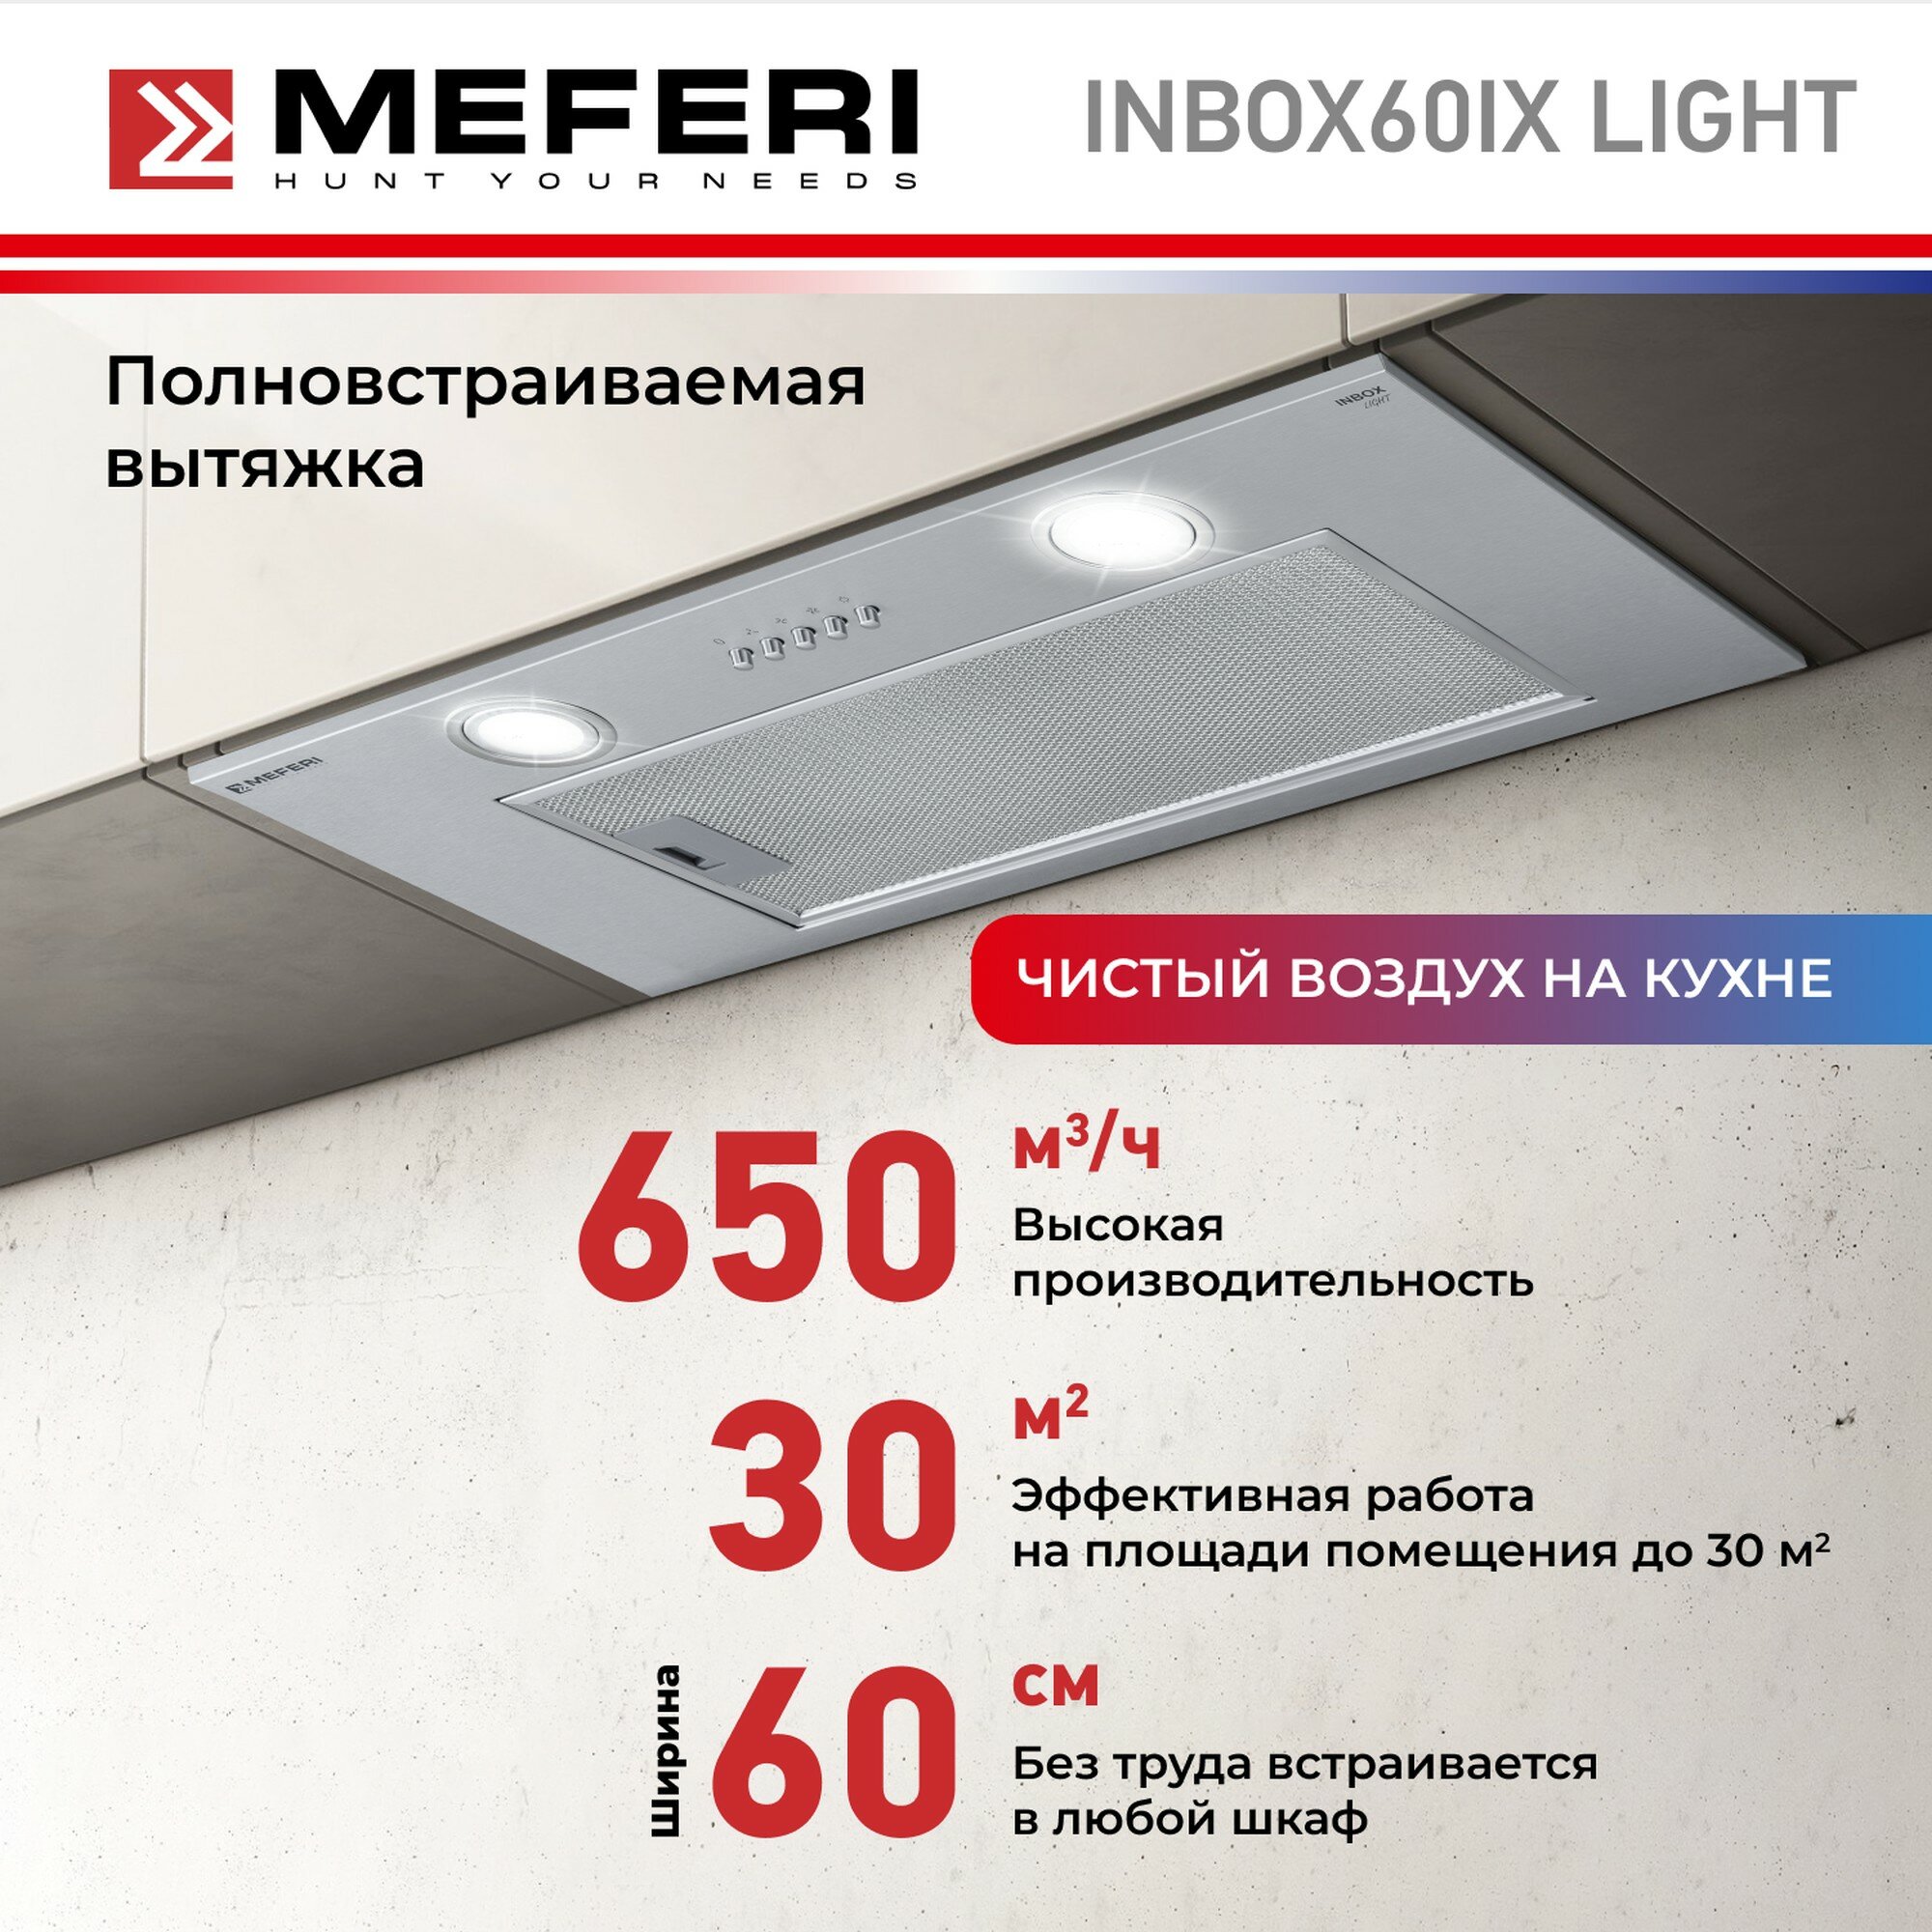 Полновстраиваемая вытяжка MEFERI INBOX60 LIGHT